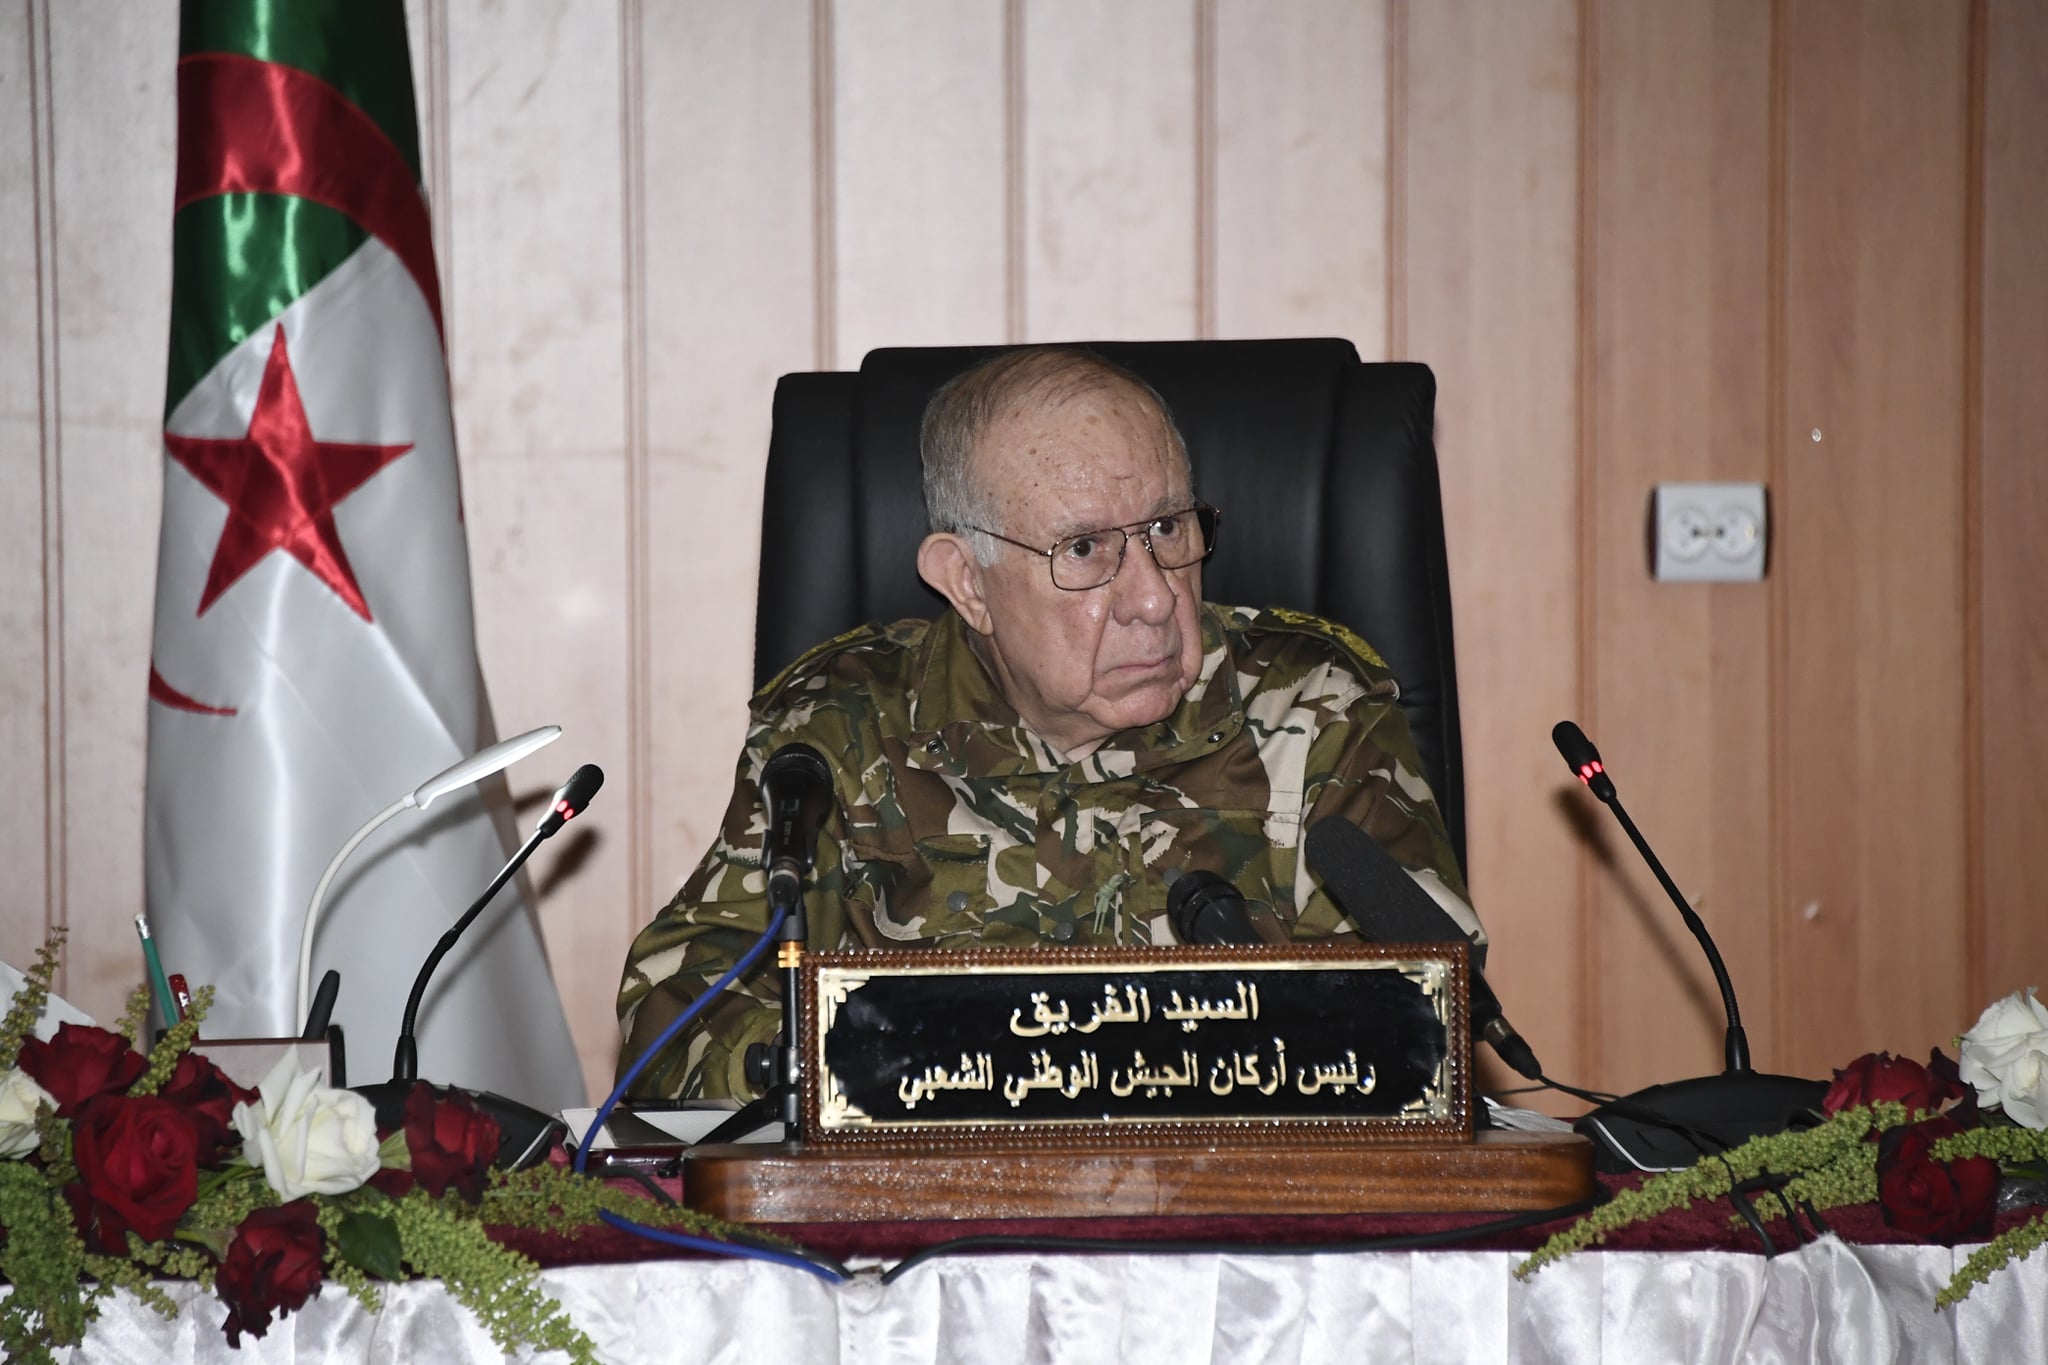 الفريق السعيد شنقريحة، رئيس أركان الجيش الجزائري (وزارة الدفاع الجزائرية)